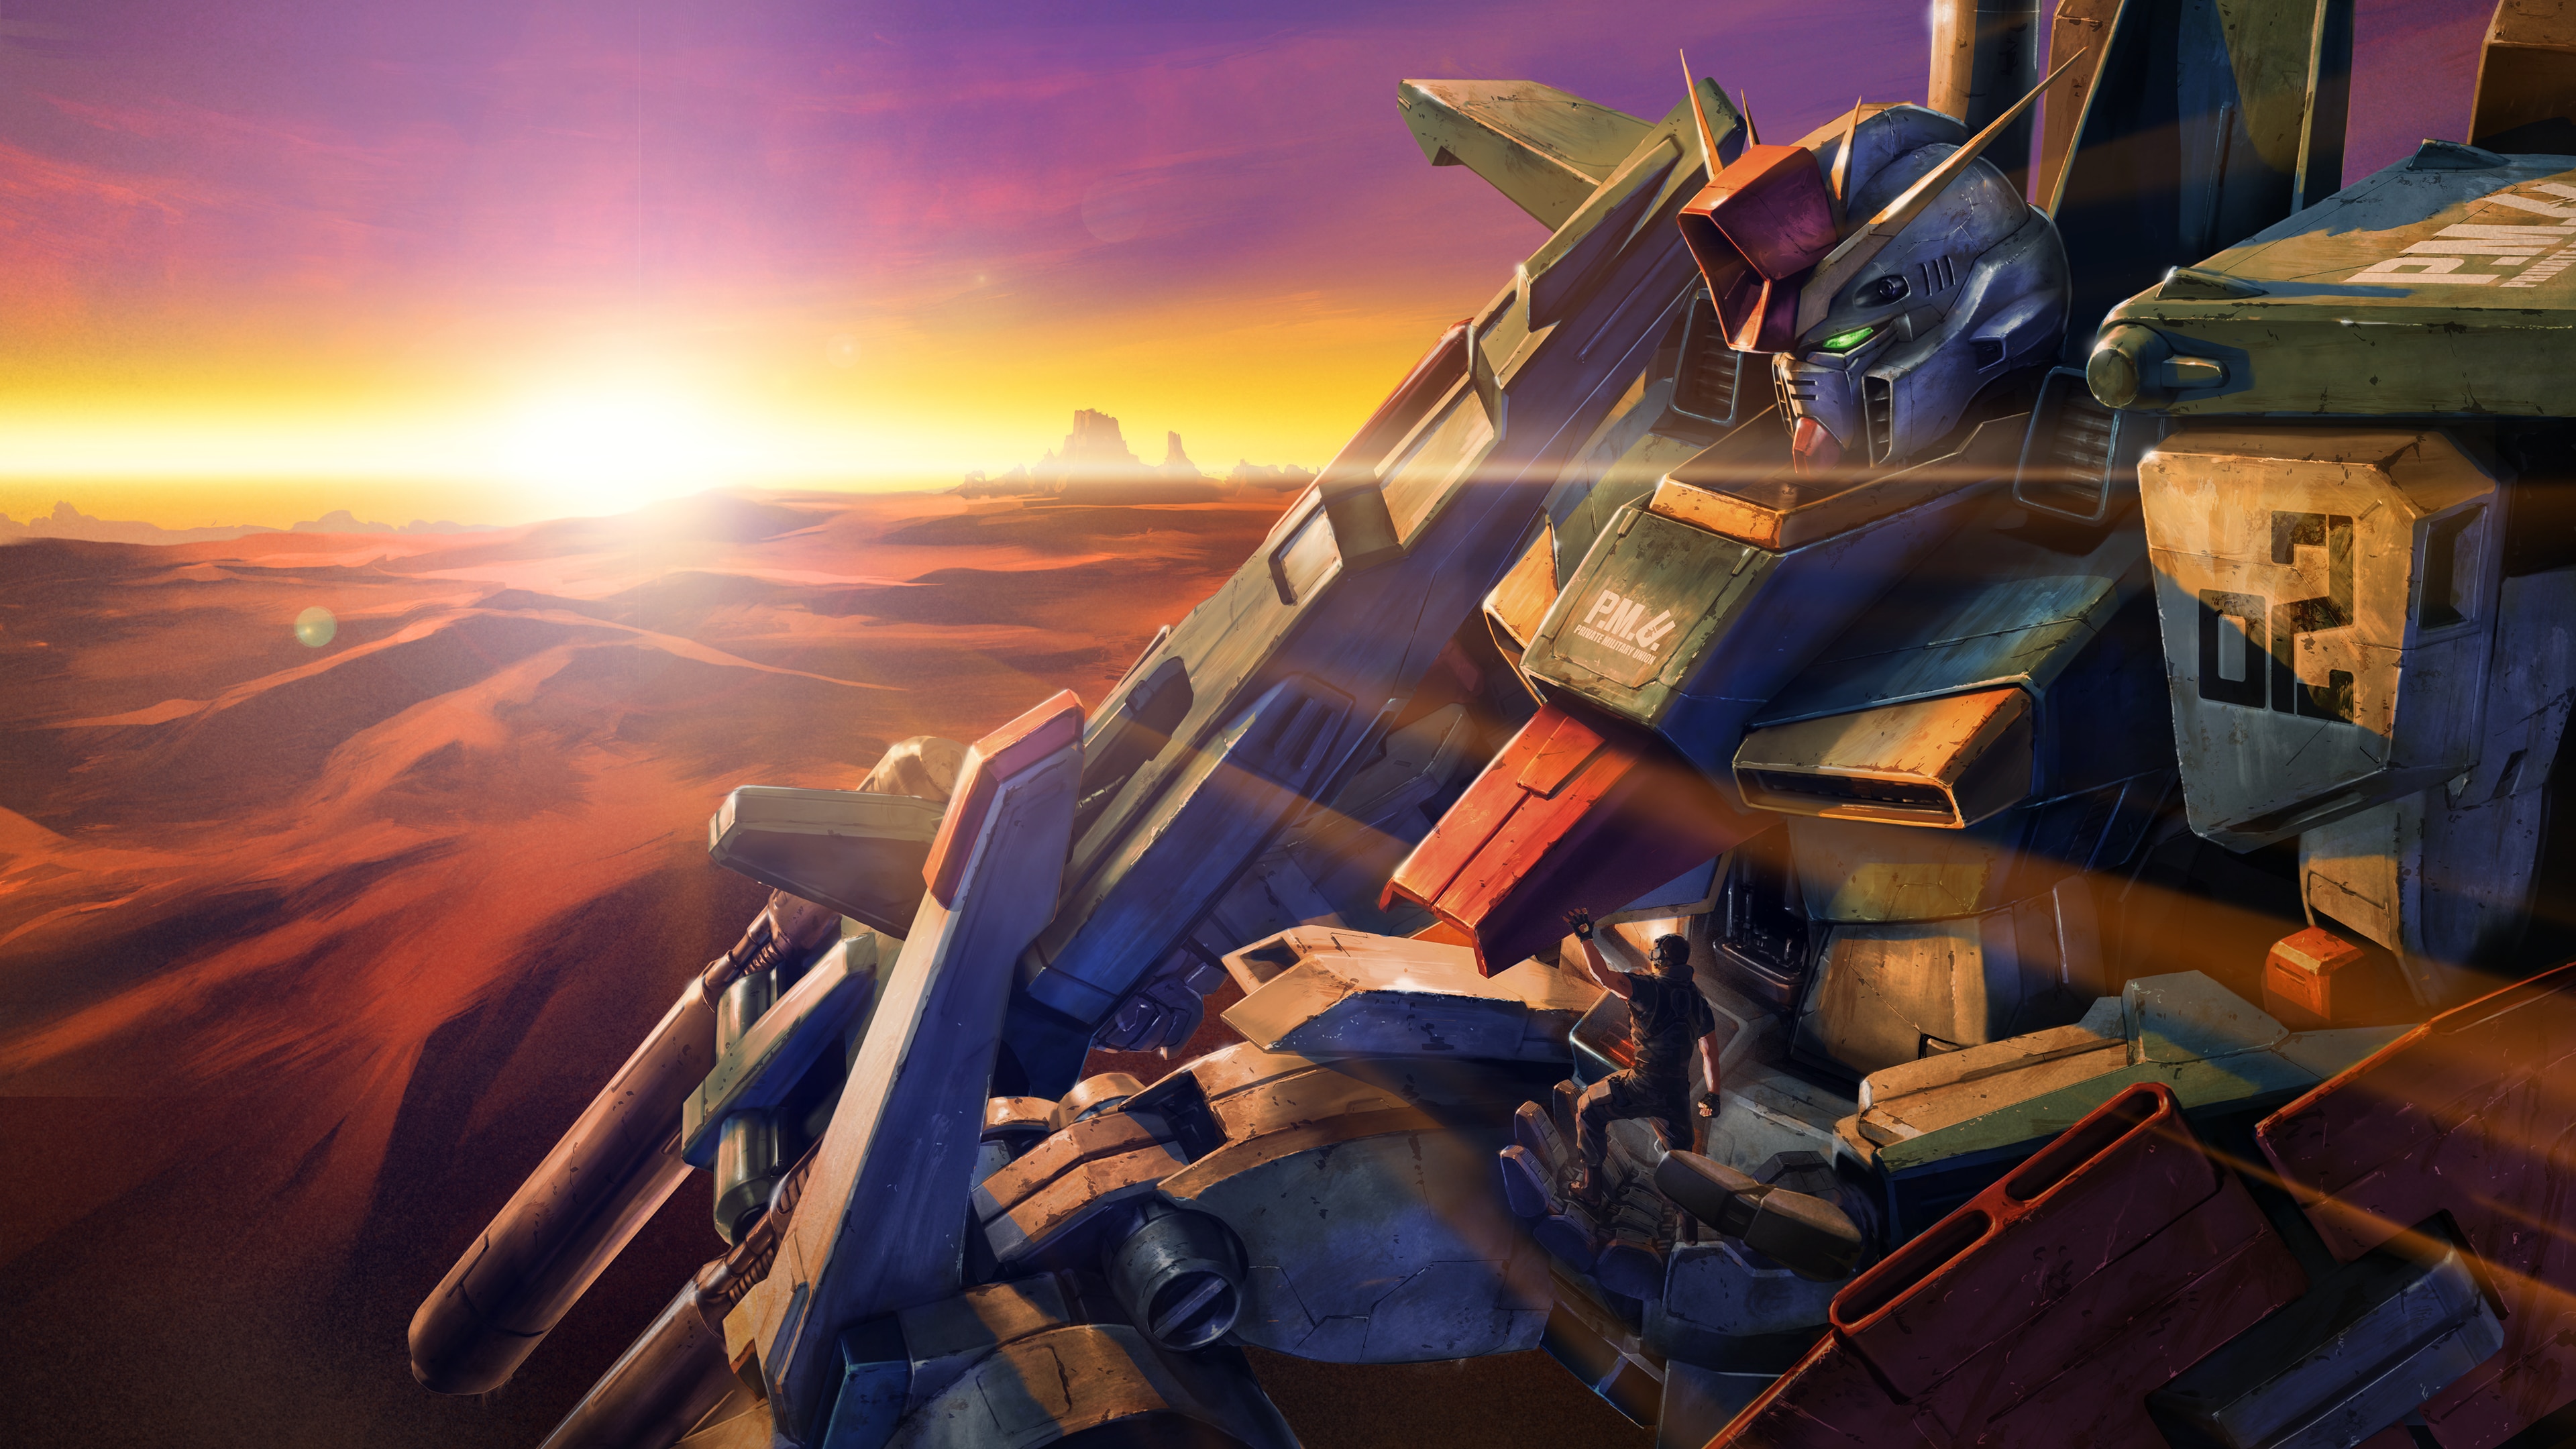 Bộ sưu tập Gundam Battle Operation 2 Wallpaper sẽ khiến bạn có một trải nghiệm hoàn hảo trên màn hình máy tính của mình. Bộ sưu tập này tập trung vào các máy chiến đấu với độ phân giải cao và các hình nền độc quyền. Sử dụng những hình nền này để làm mới màn hình máy tính của bạn và khiến bạn đắm chìm vào thế giới Gundam.